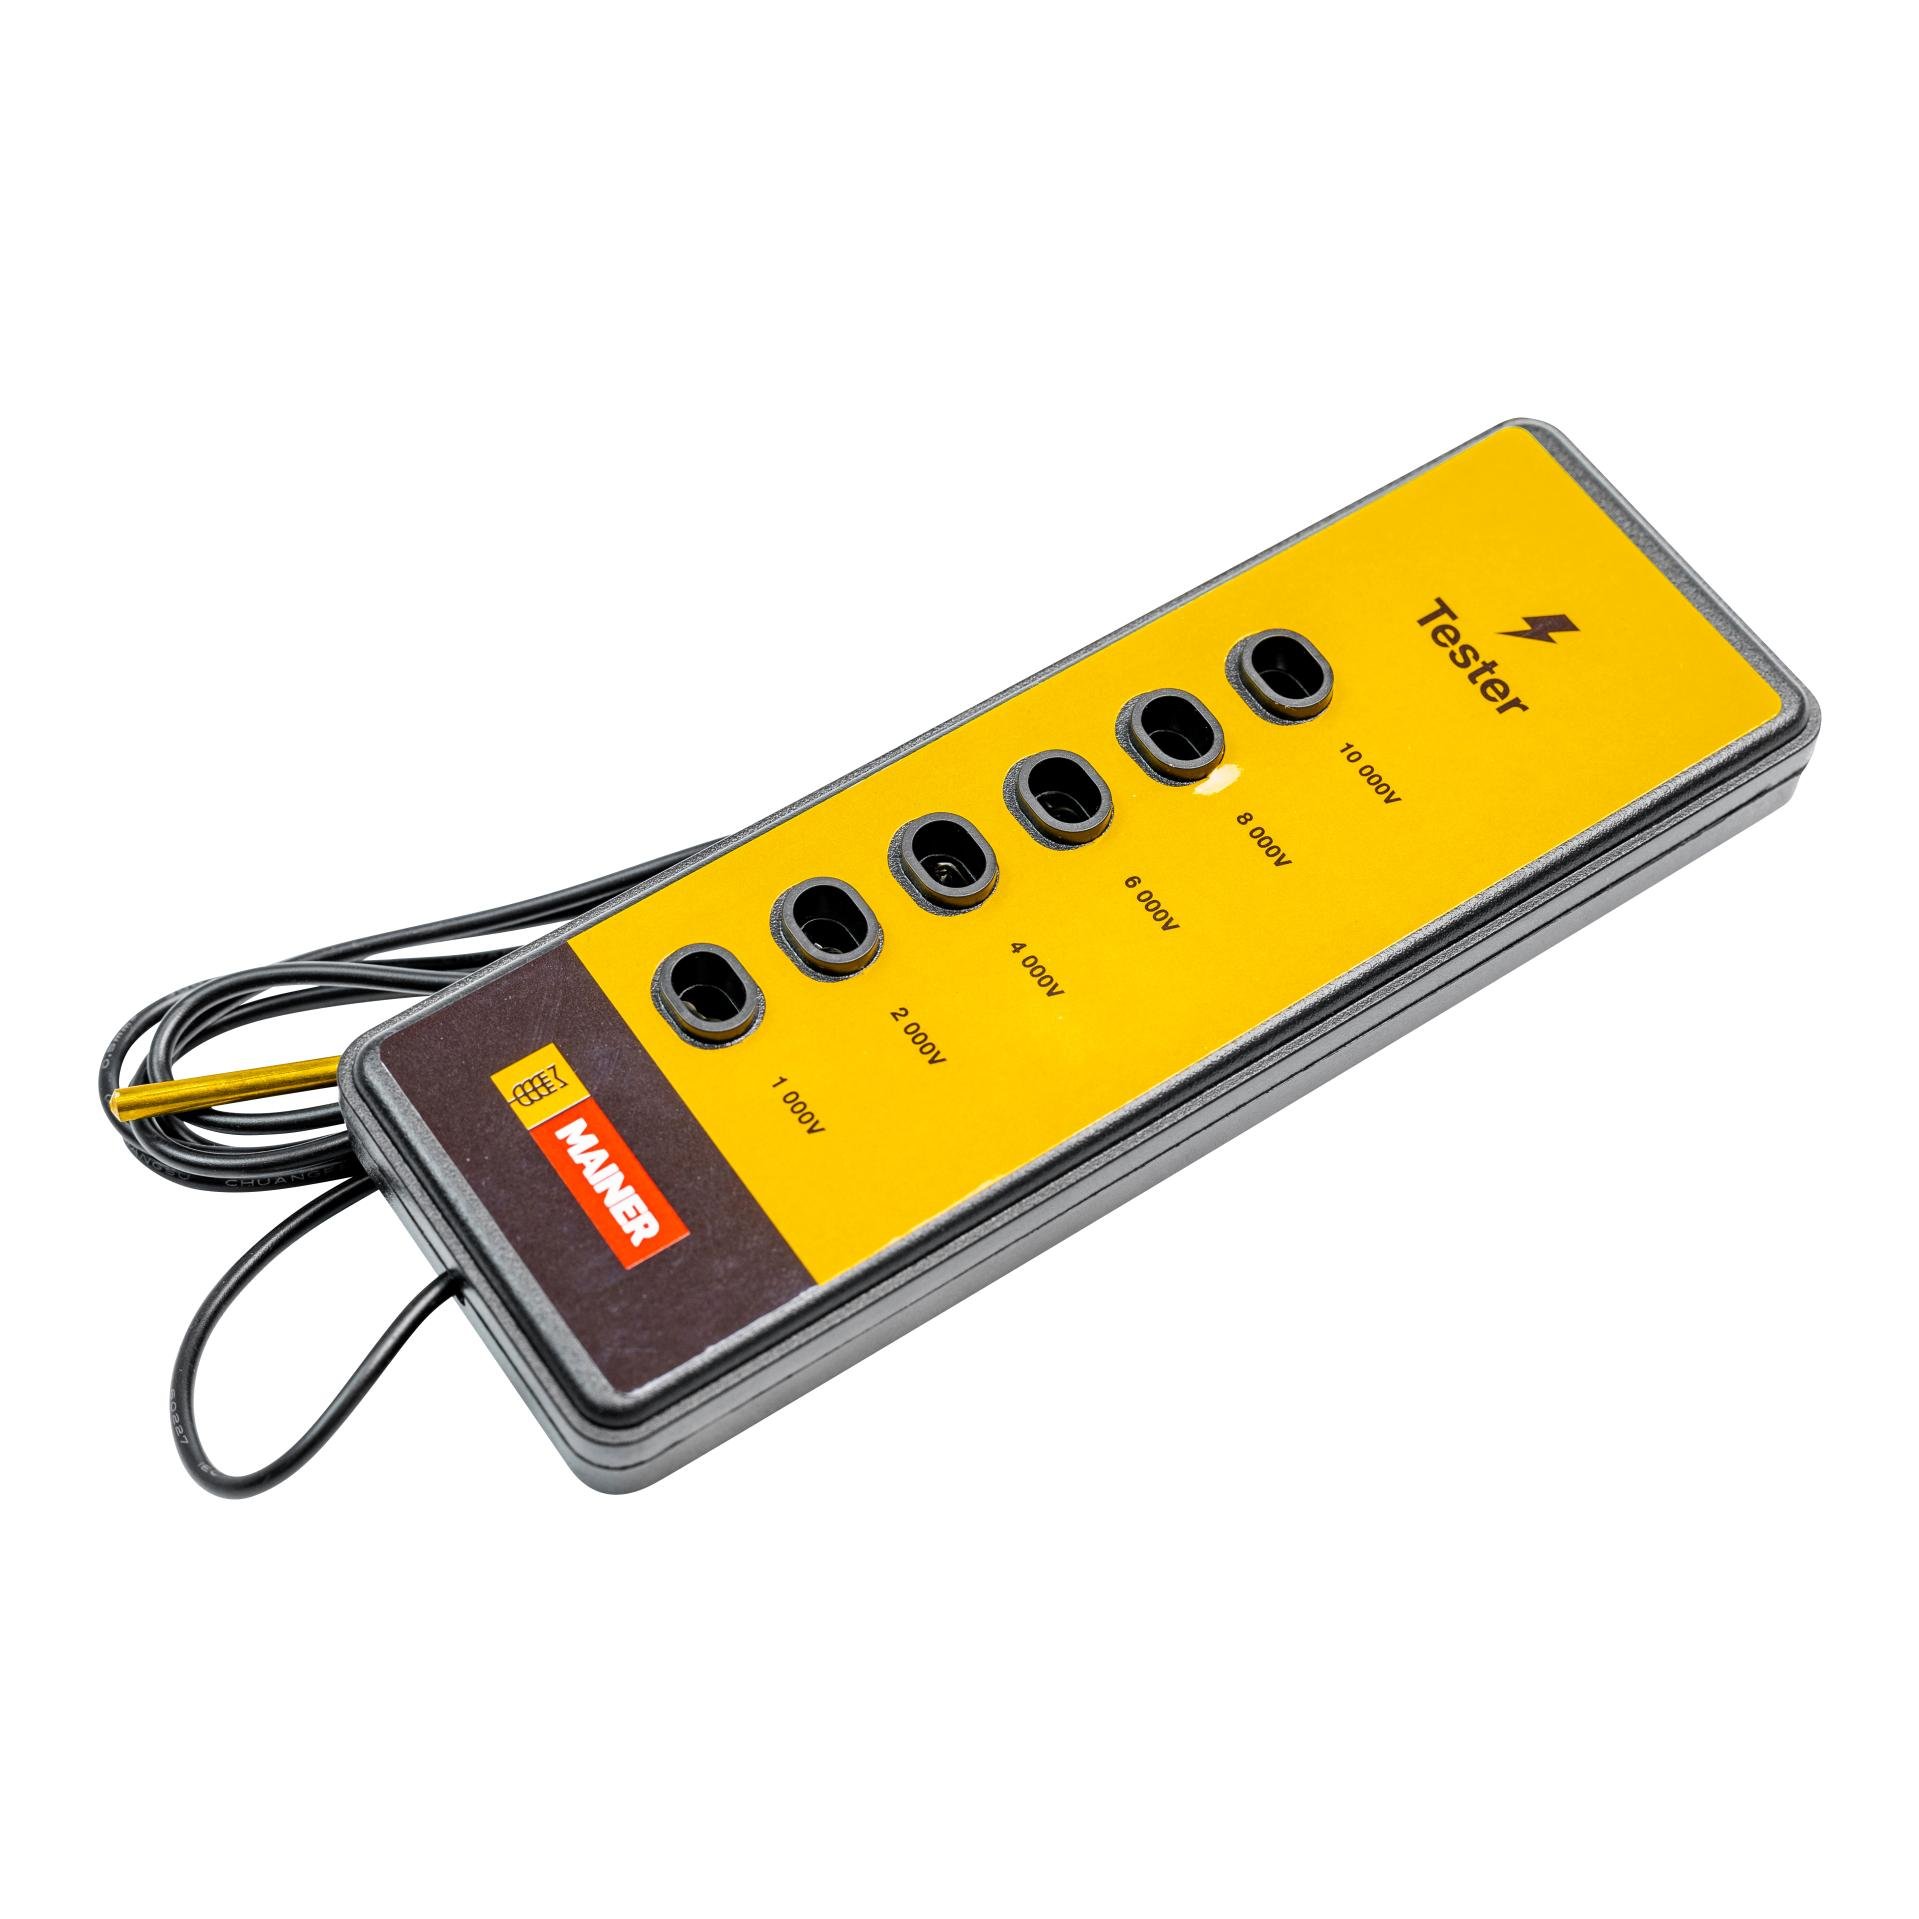 Tester cloture electrique voltmetre